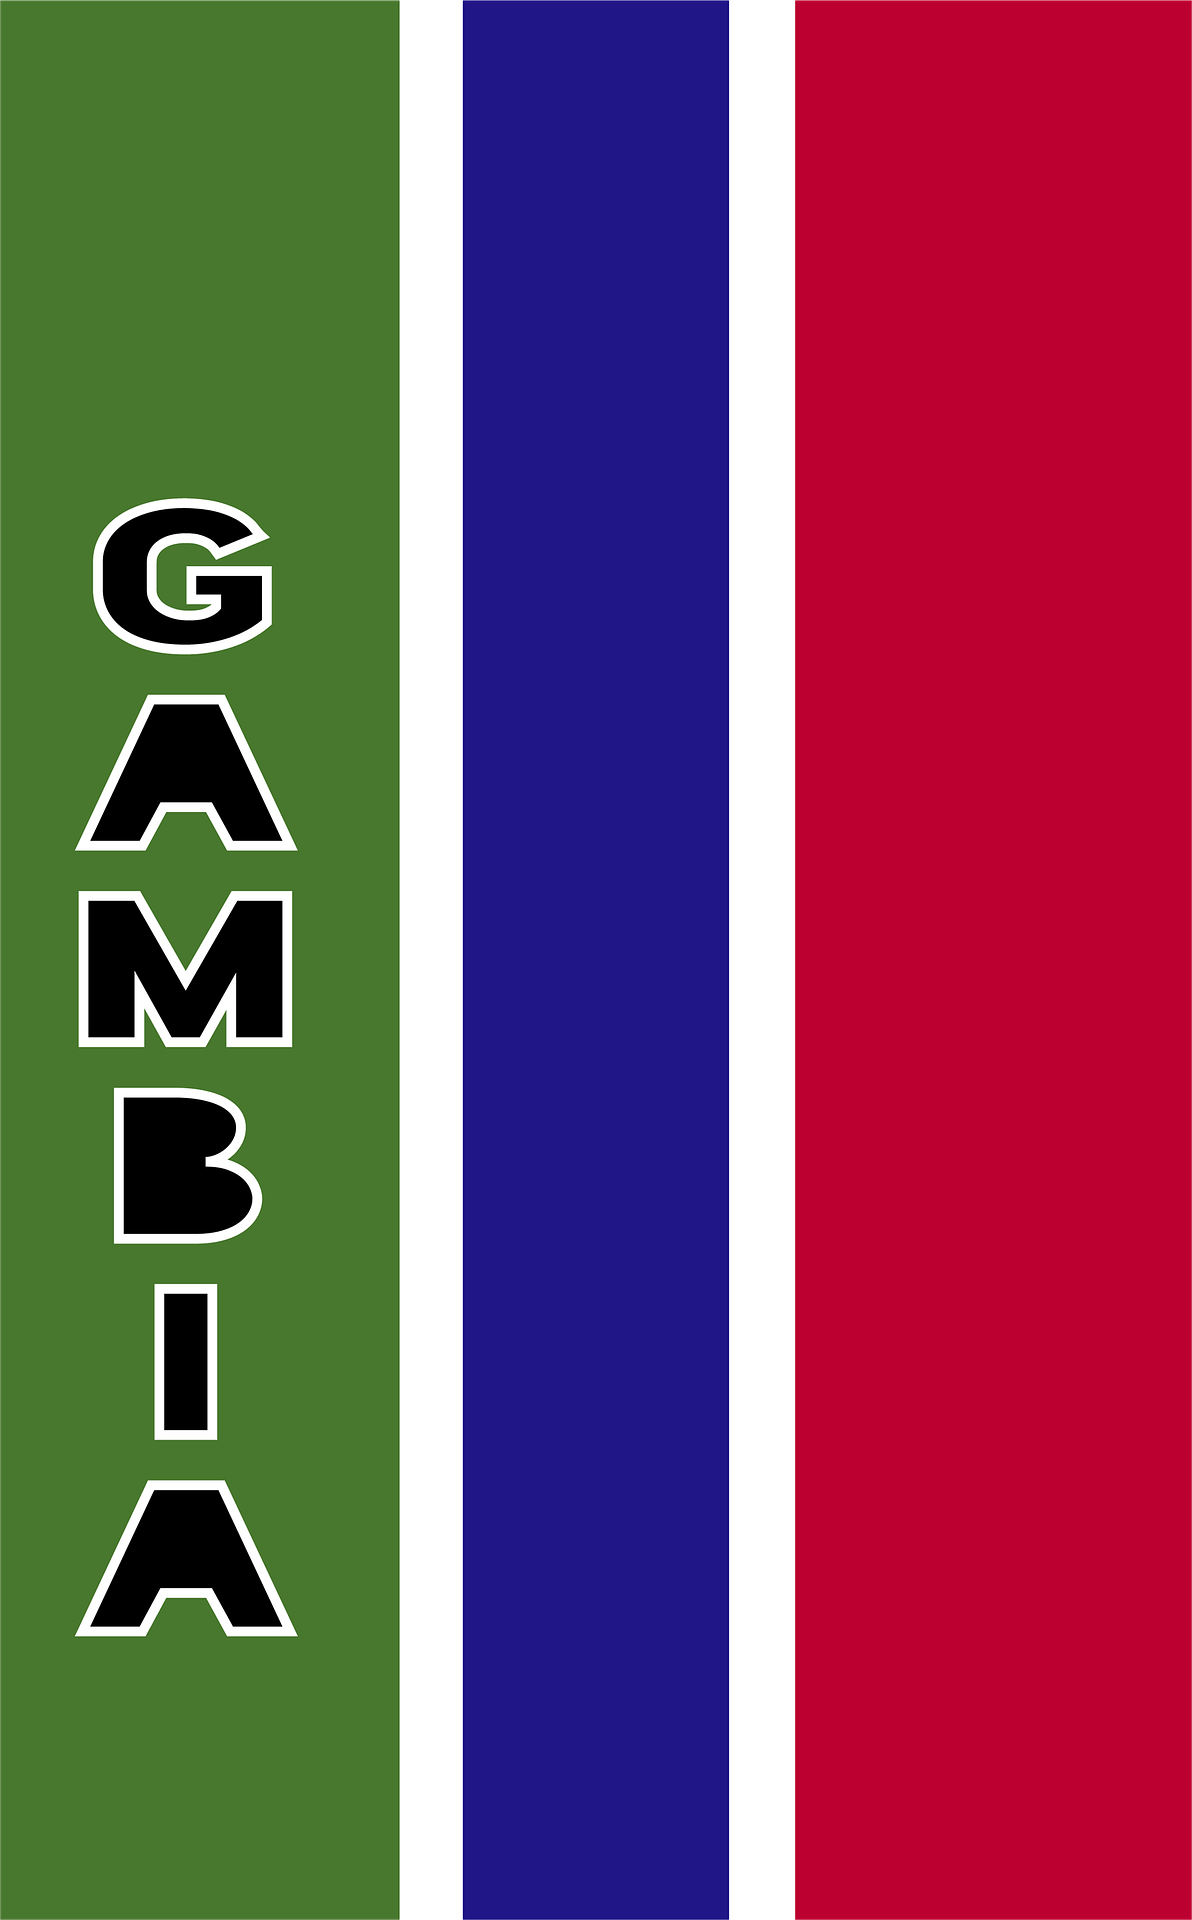 Campaña de sensibilización prodemocracia en Gambia insta a mayor involucramiento ciudadano en política